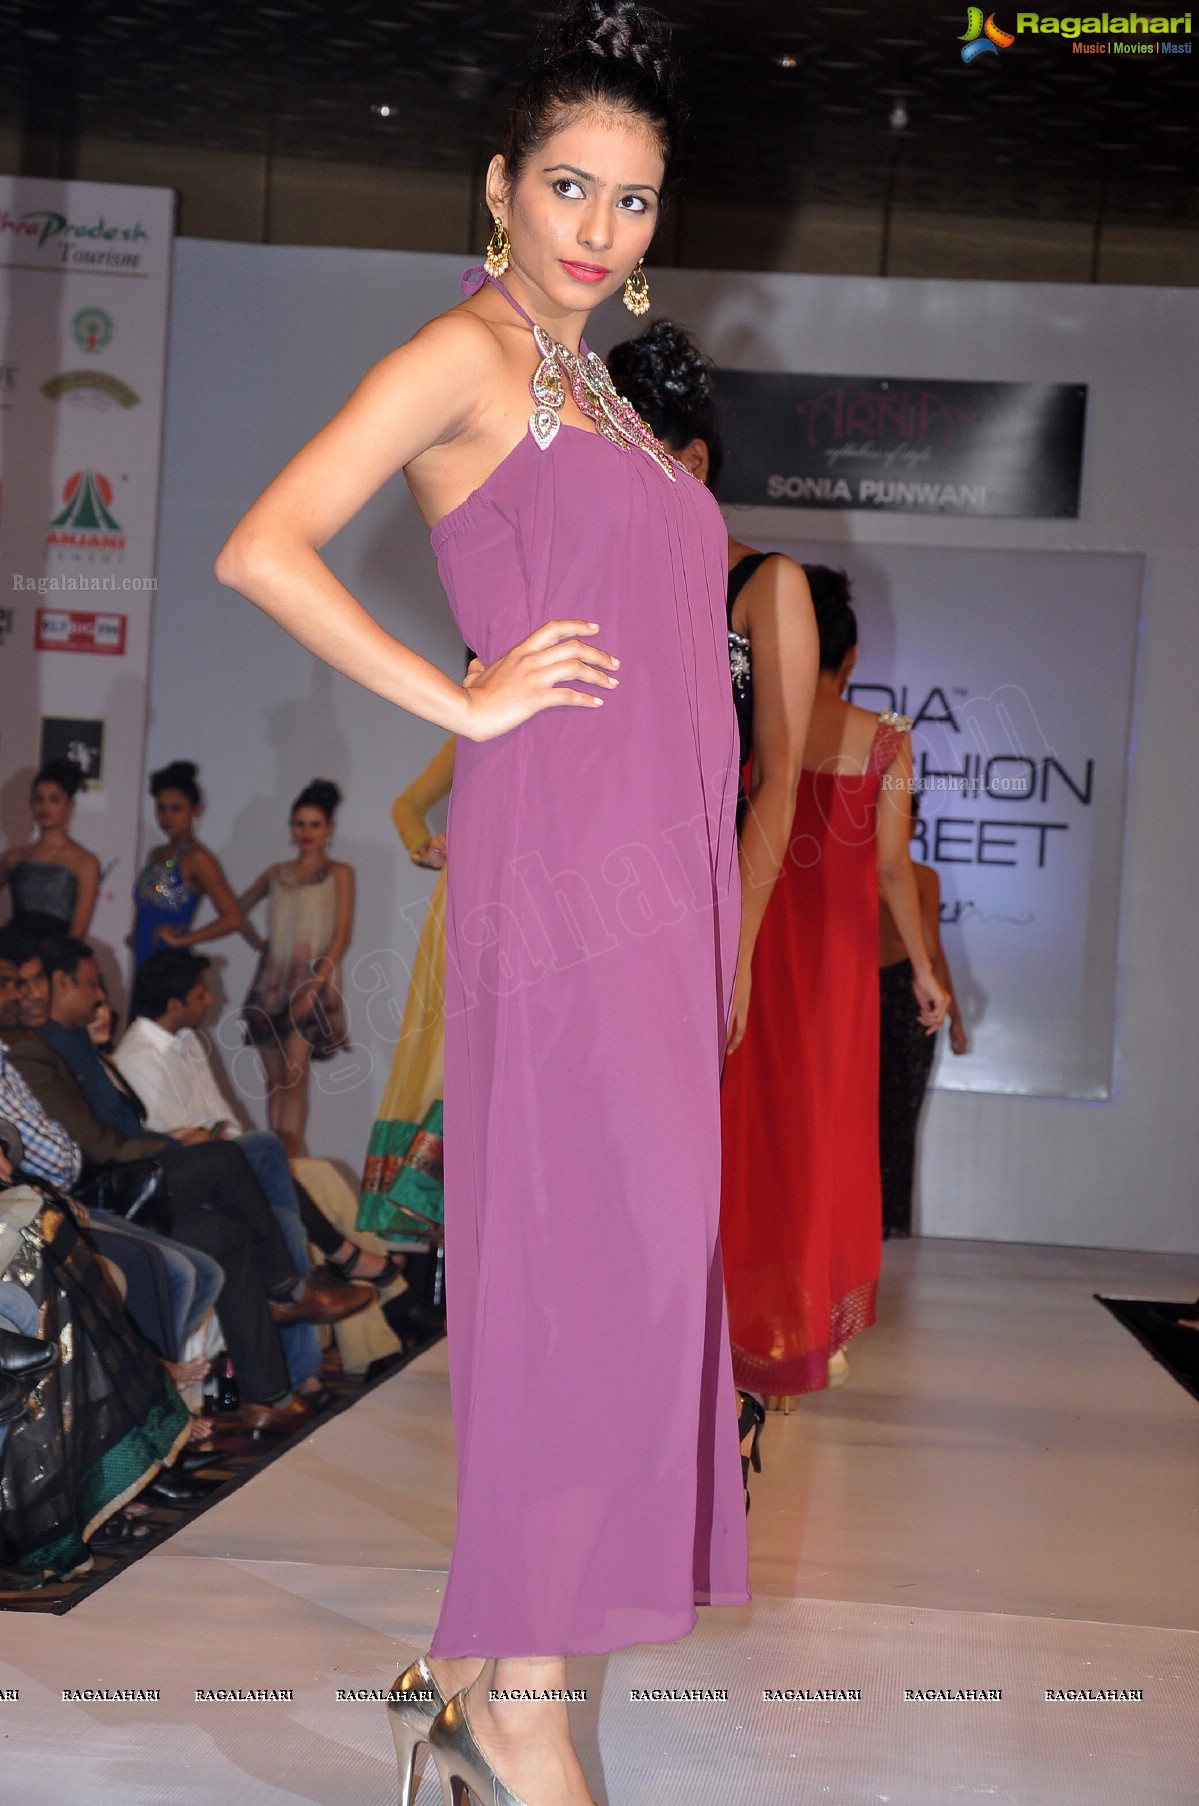 India Fashion Street - Fashion Tour 2012 (Day 1)